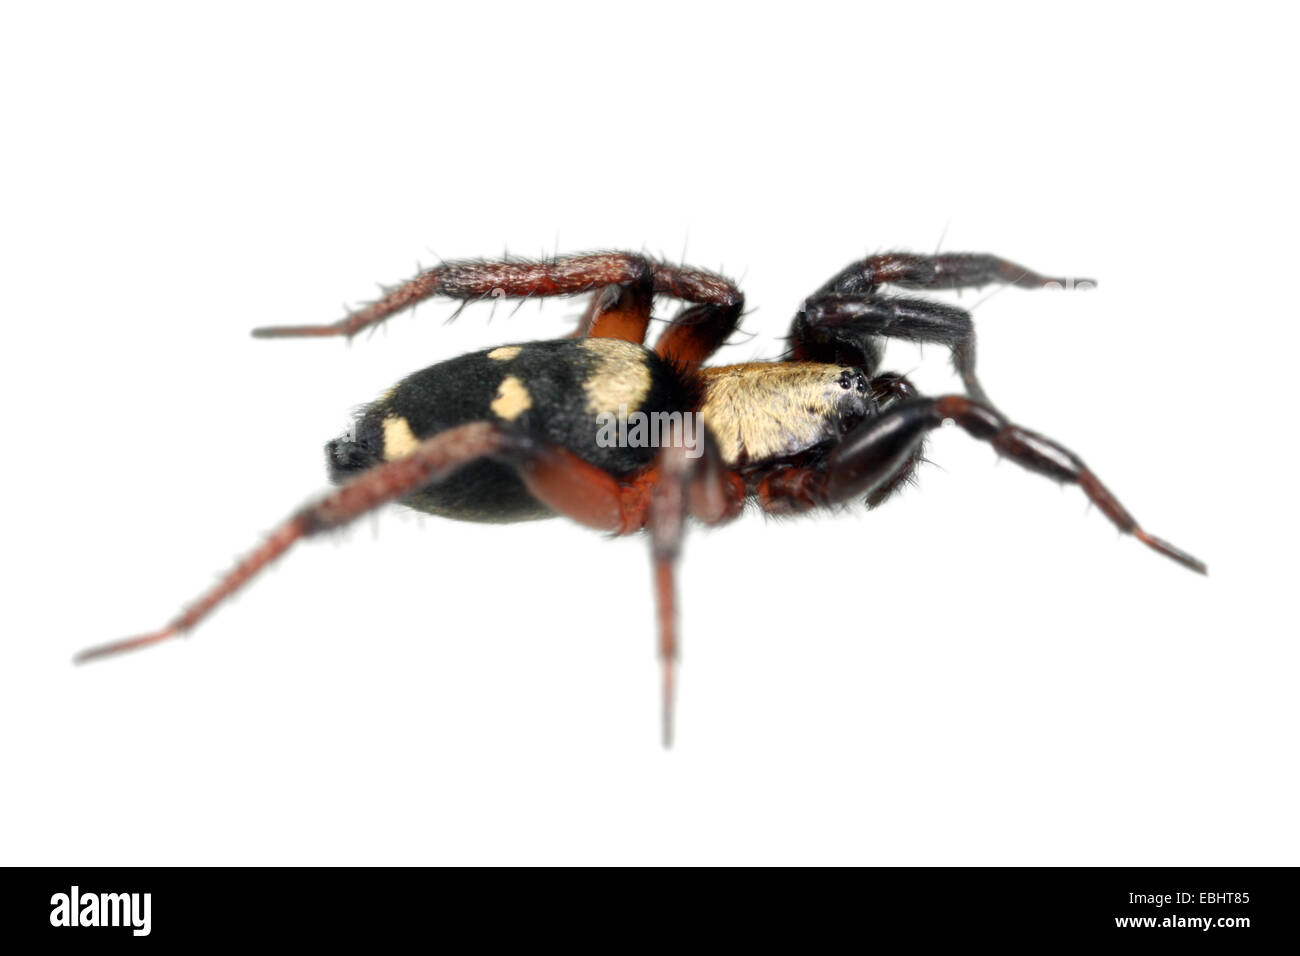 Hembra Callilepis nocturna spider sobre fondo blanco. Familia Gnaphosidae, arañas de tierra. Foto de stock